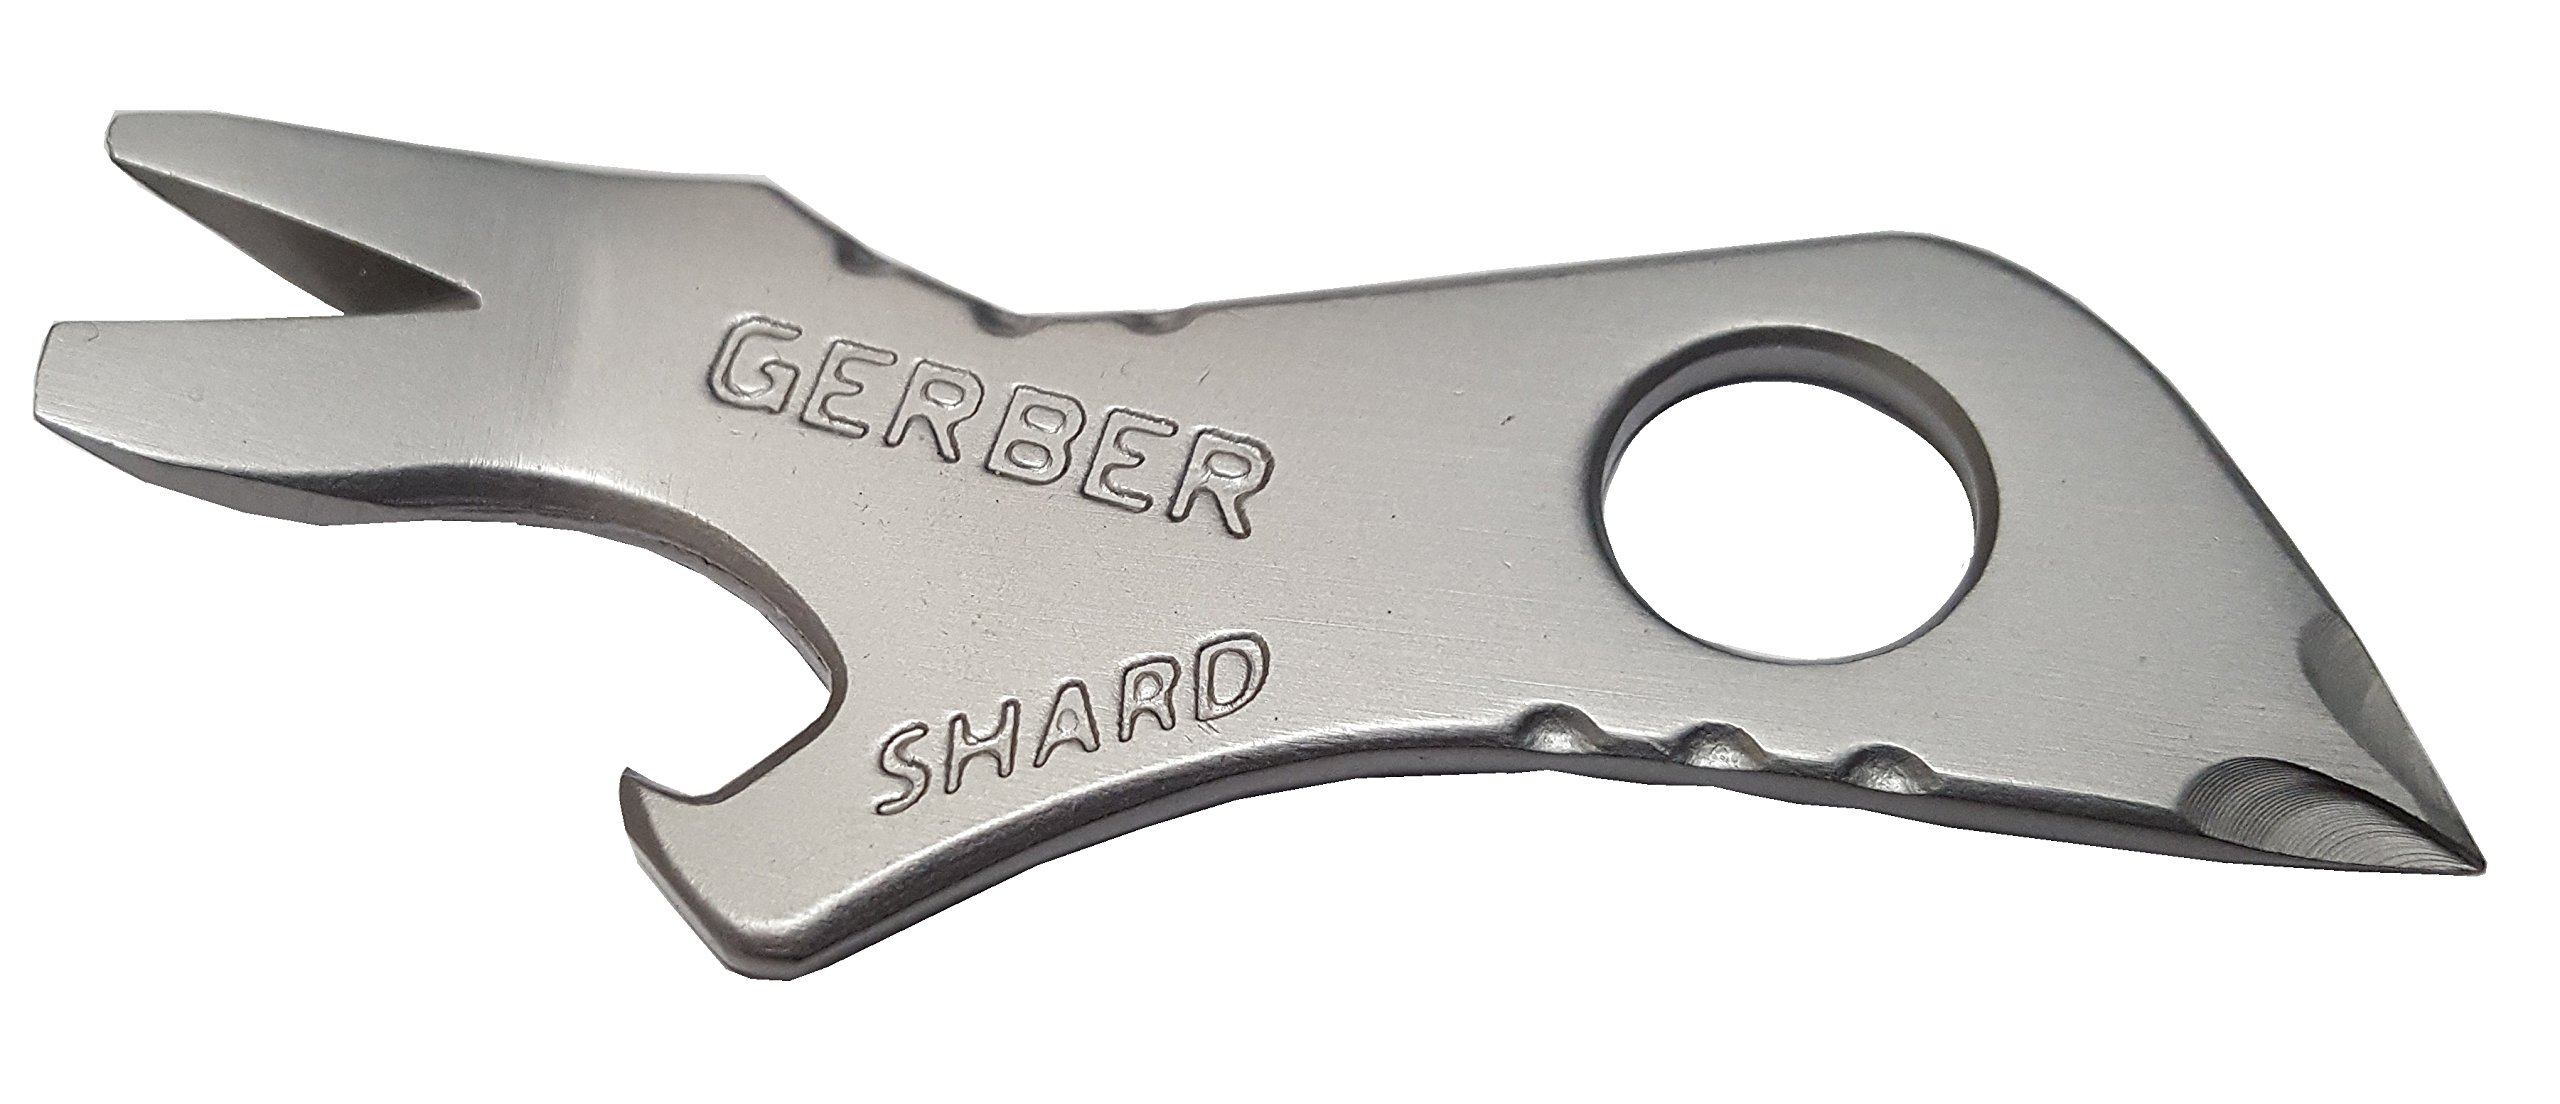 Gerber Gear Shard Keychain Review